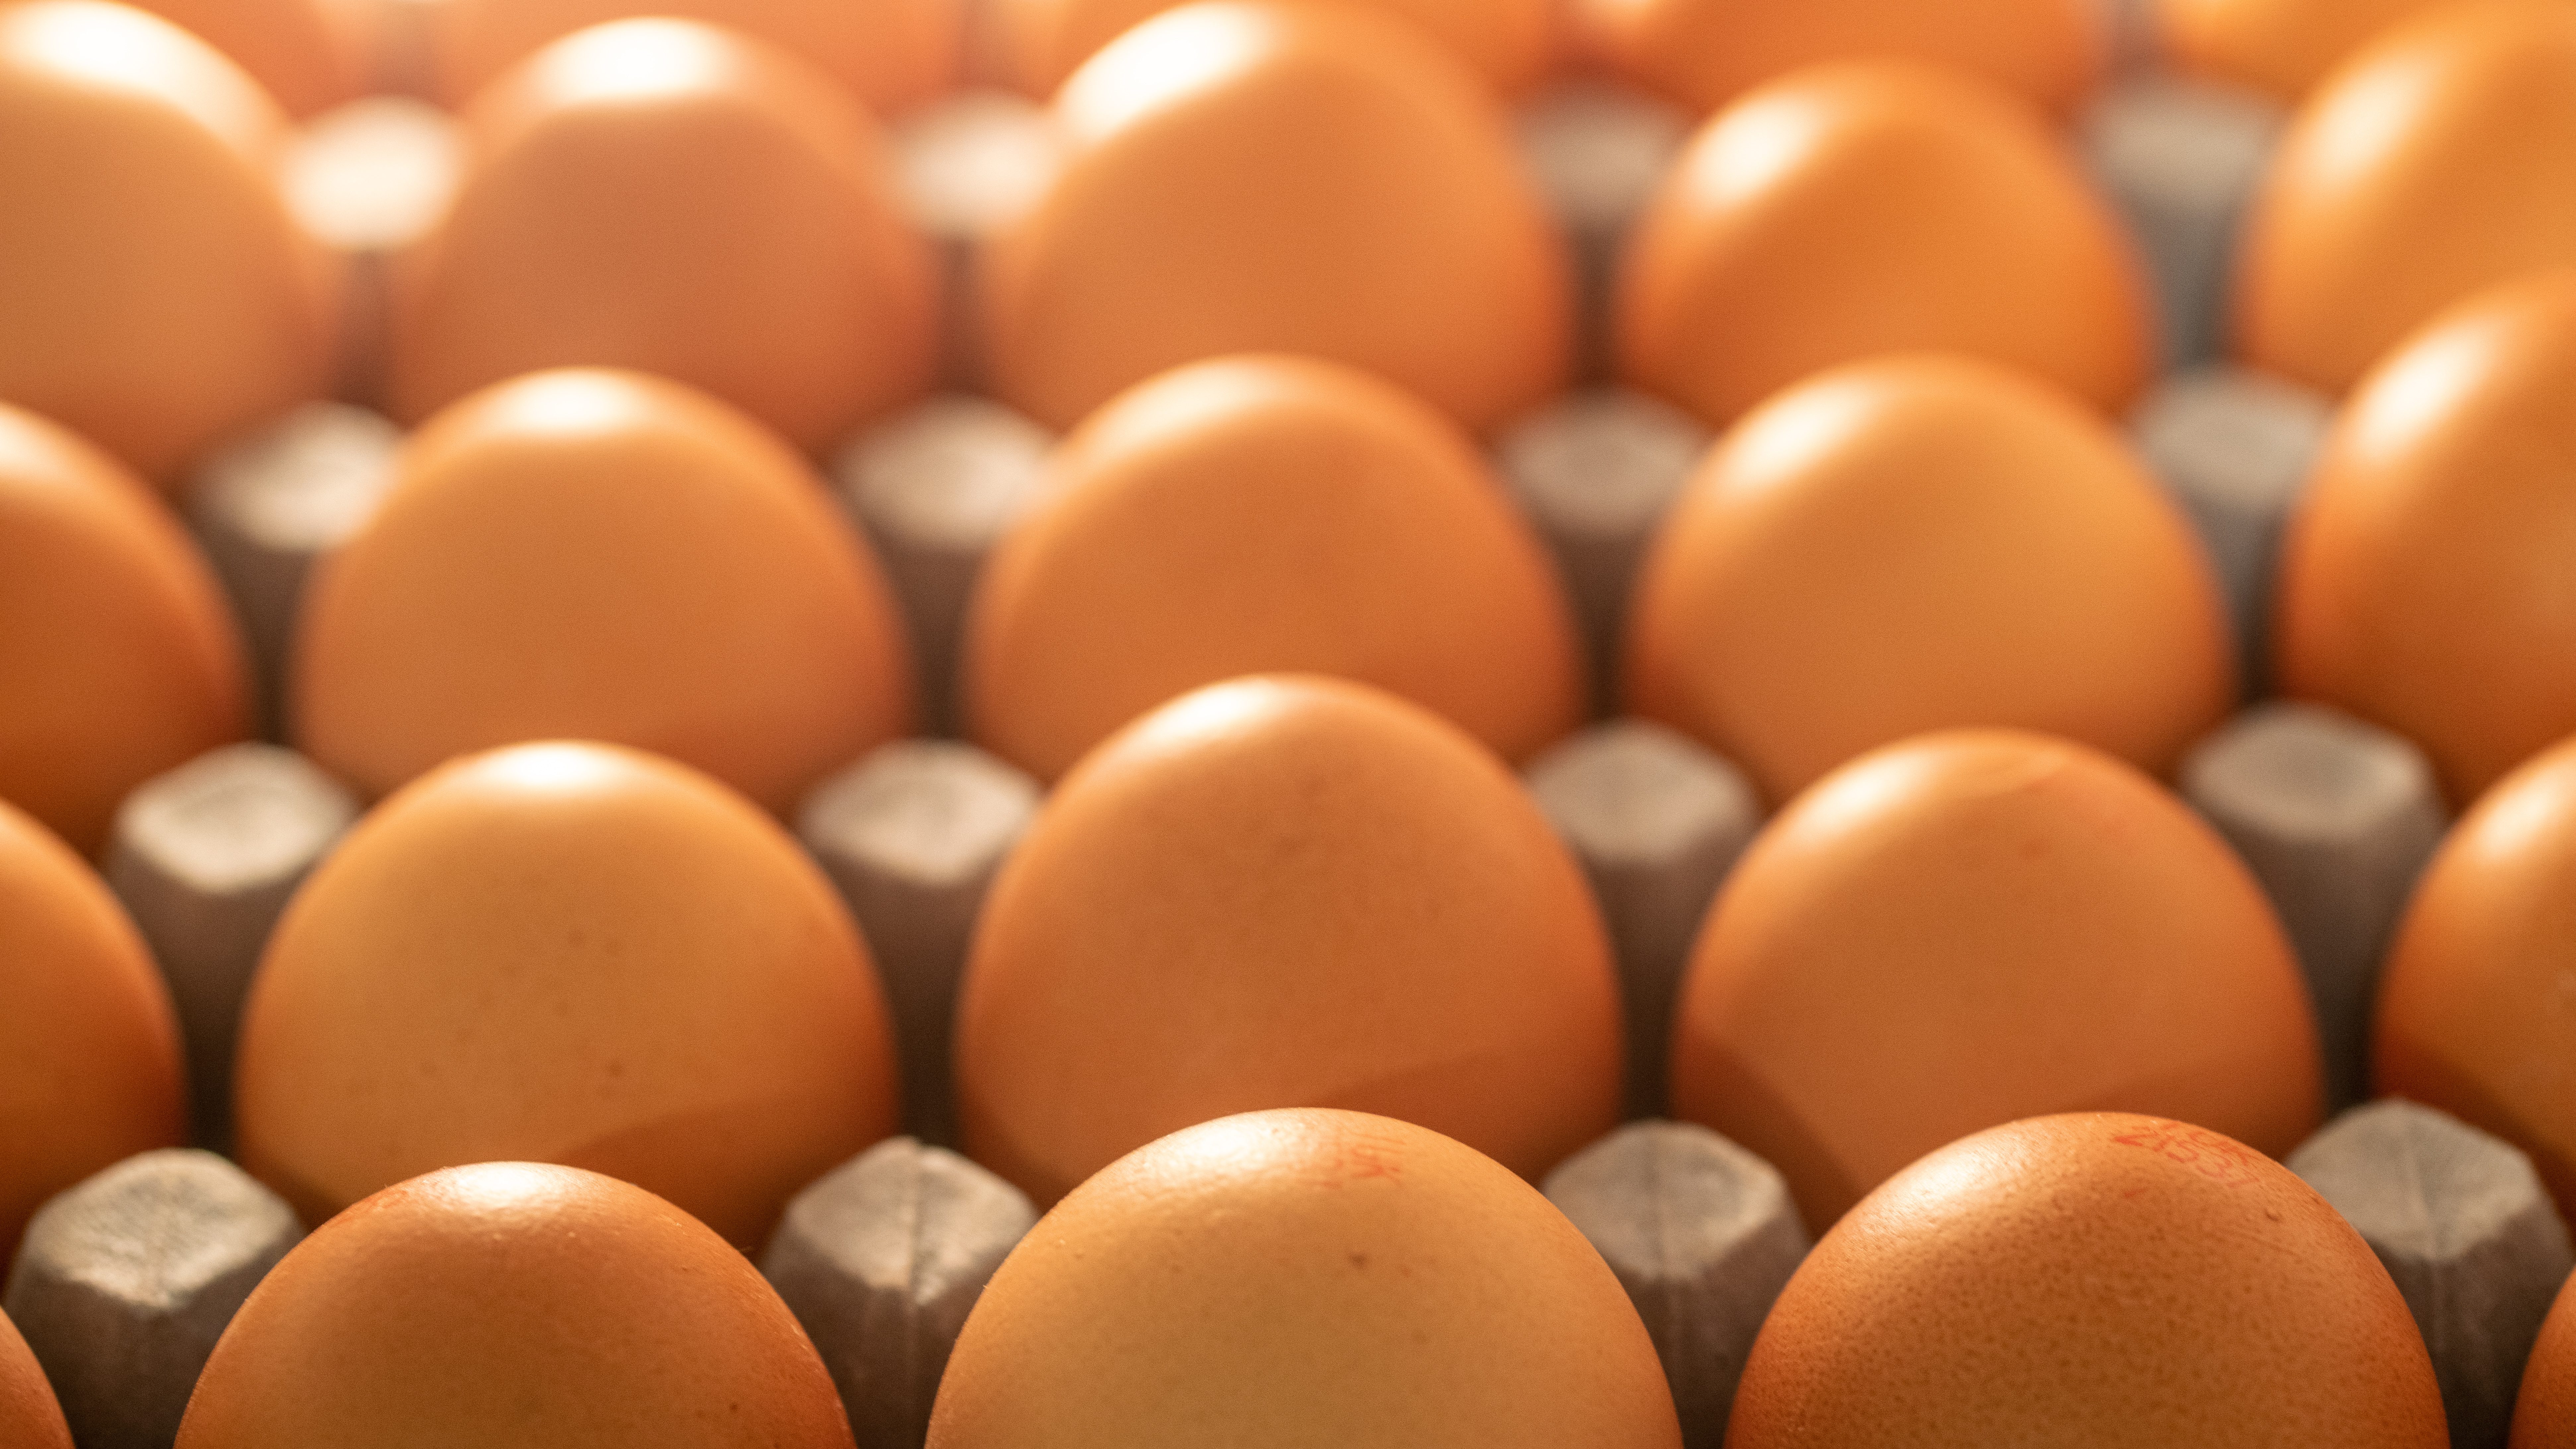 人工肉バーガーの次は“卵じゃない卵”　急成長する「植物性食品」市場 | 食品大手企業も注目